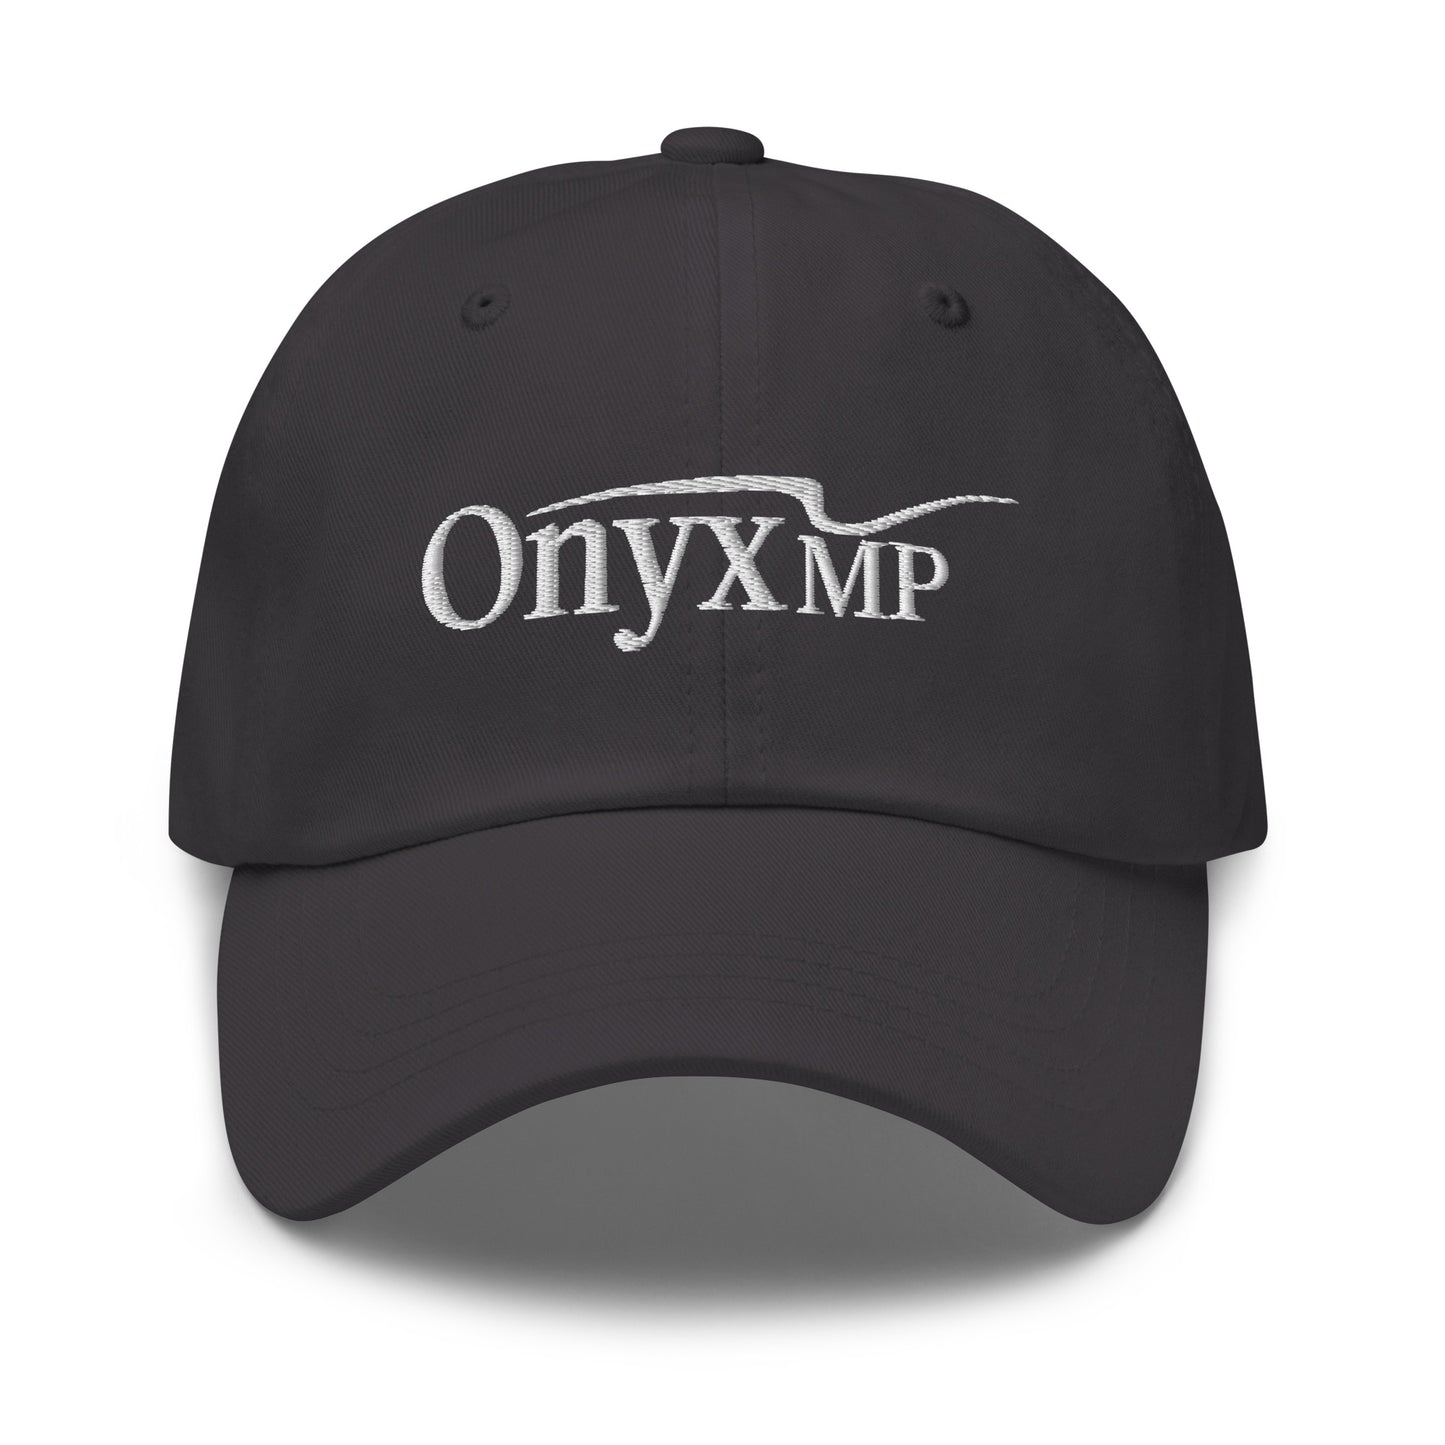 Classic dad hat - Onyx